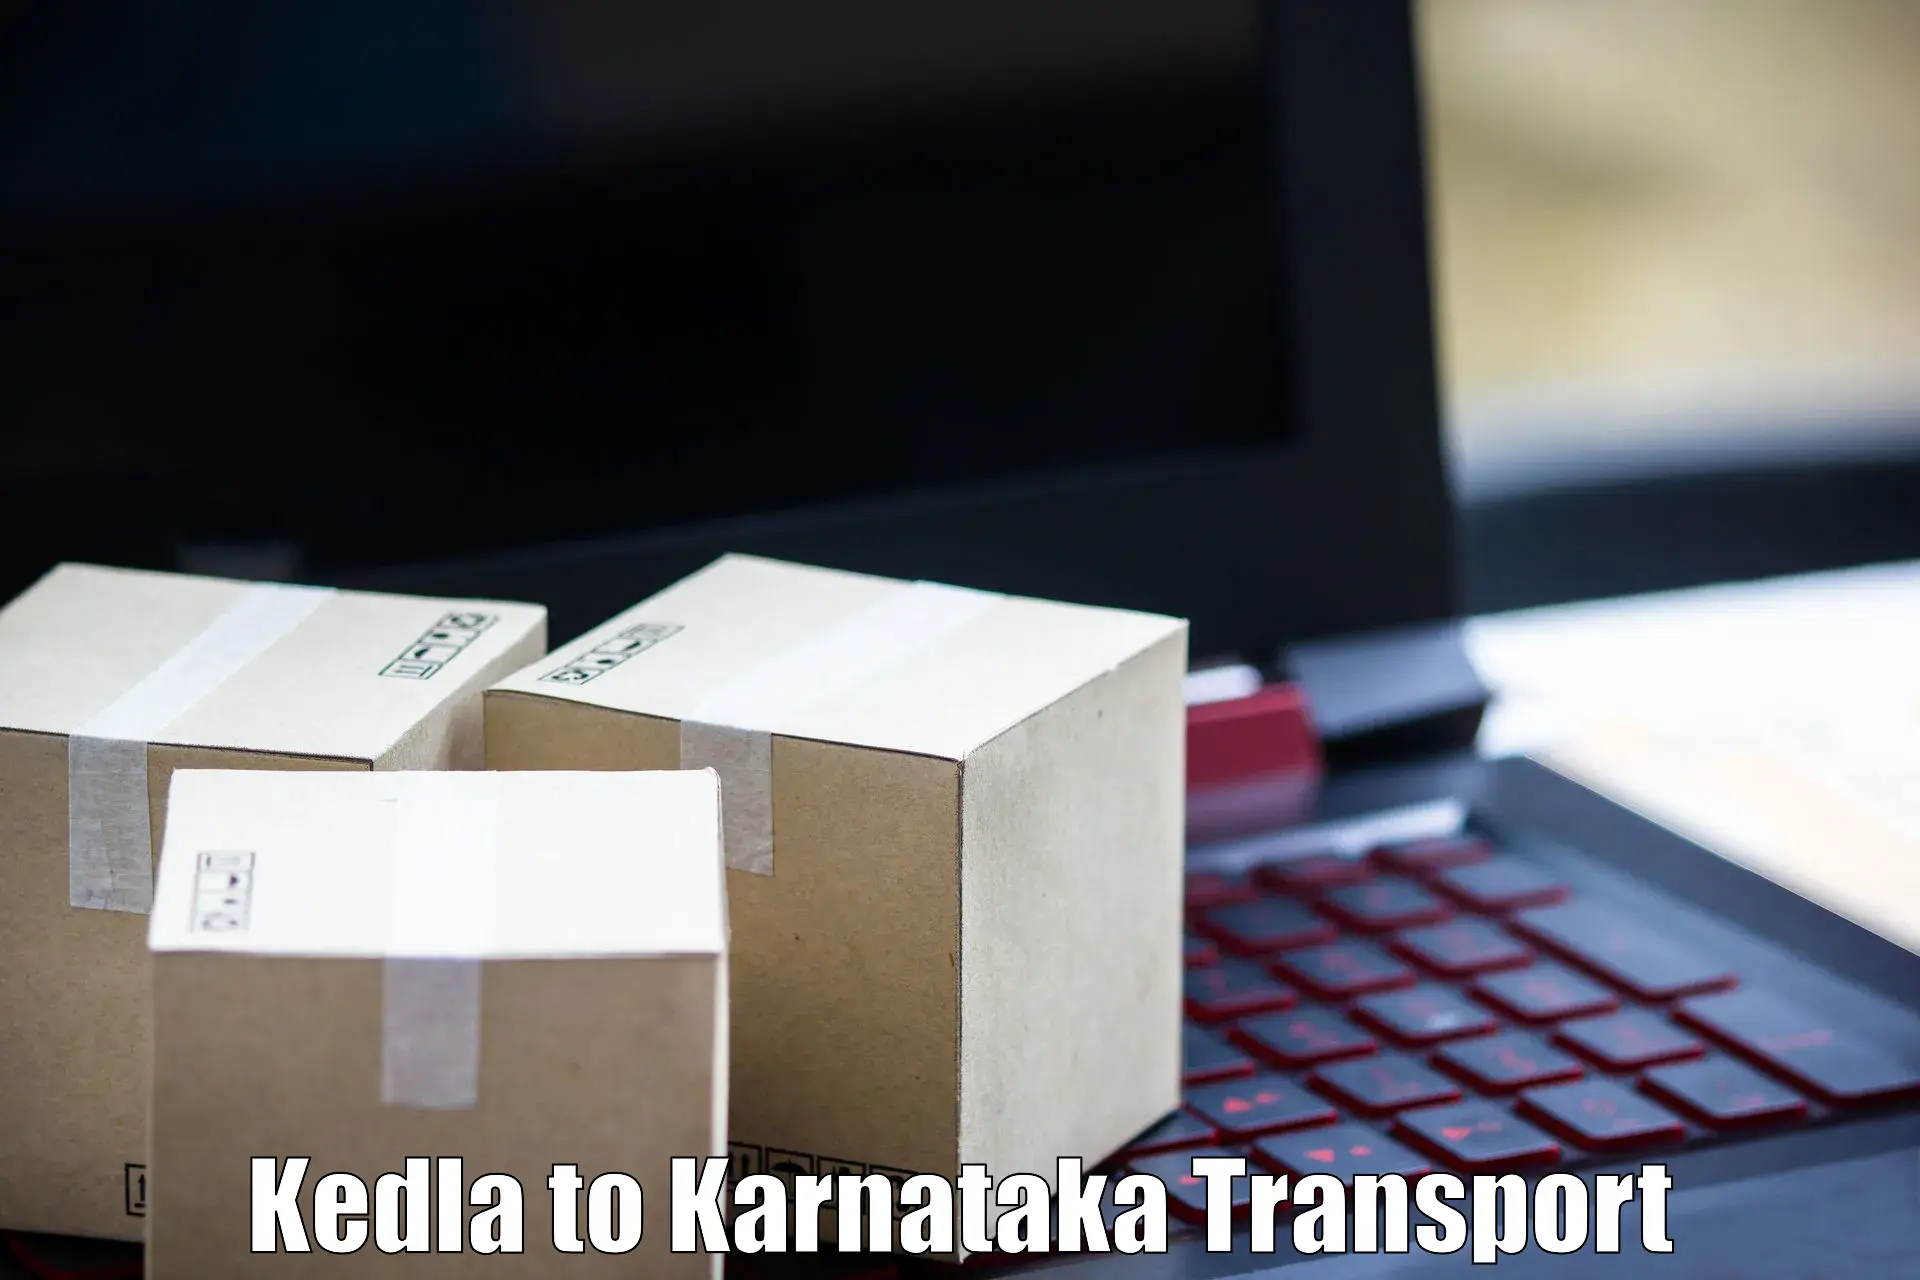 Road transport online services Kedla to Hubli